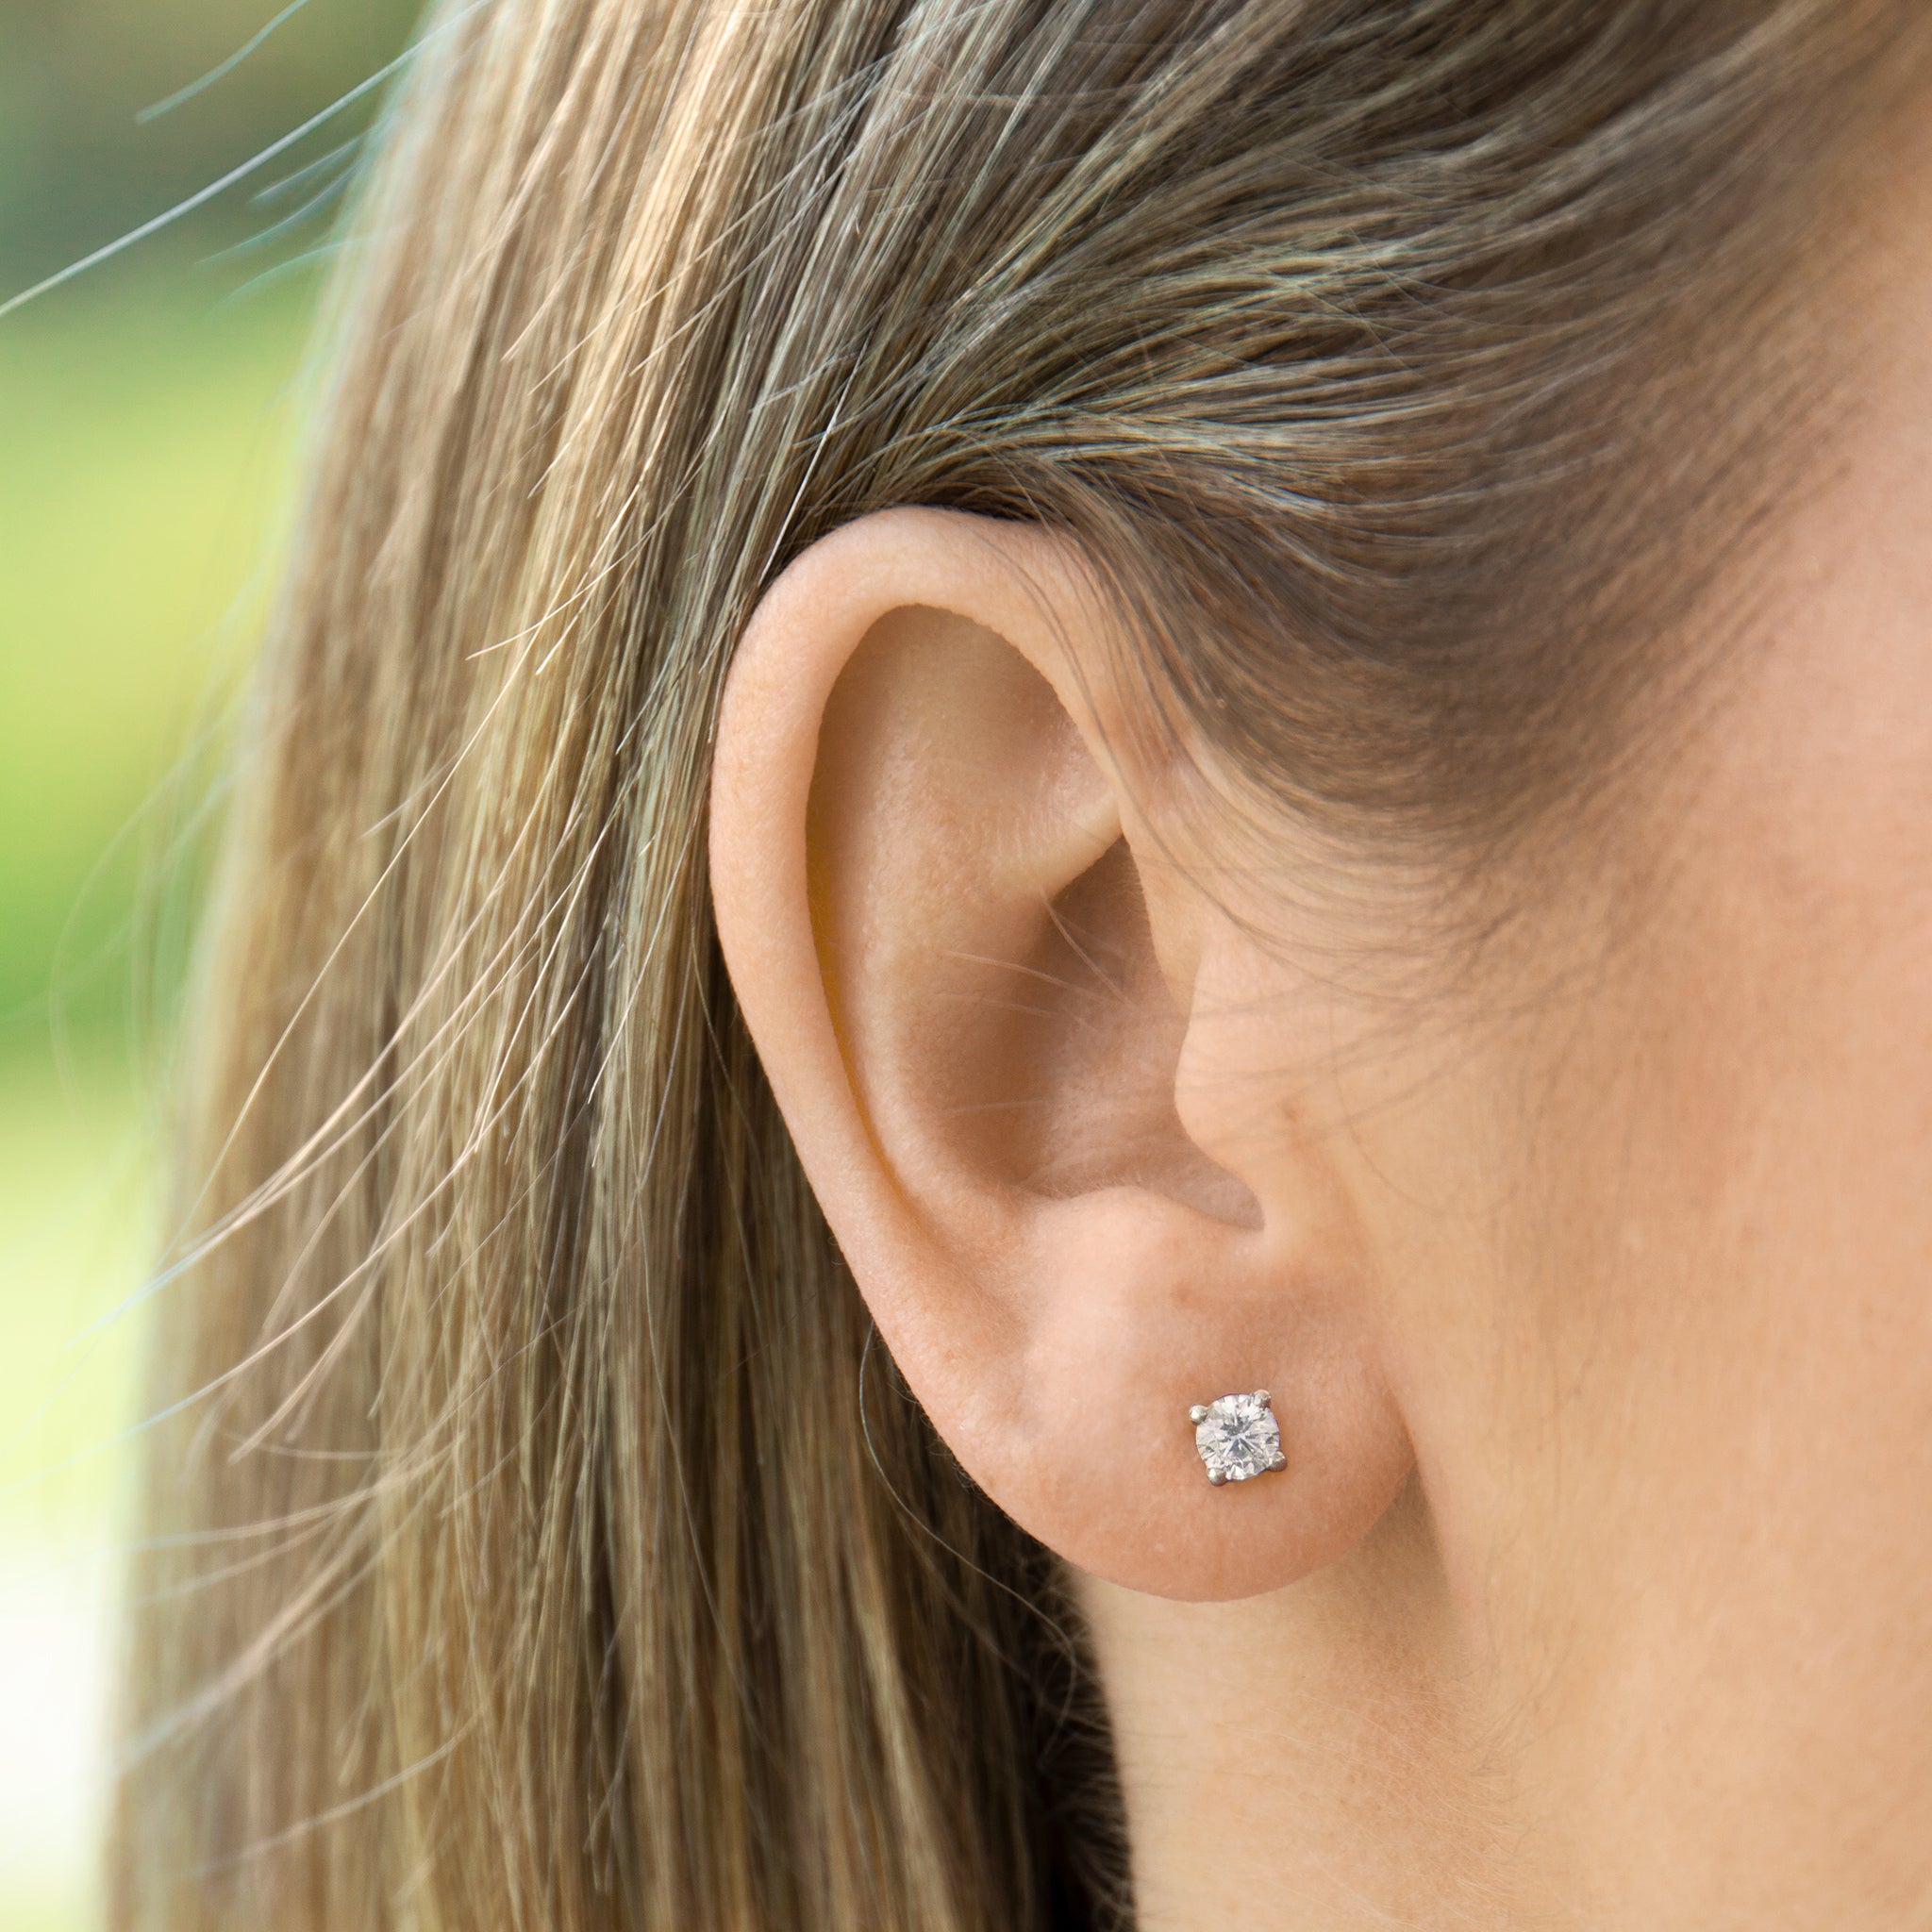 Solitaire diamond earring on ear - AïANA